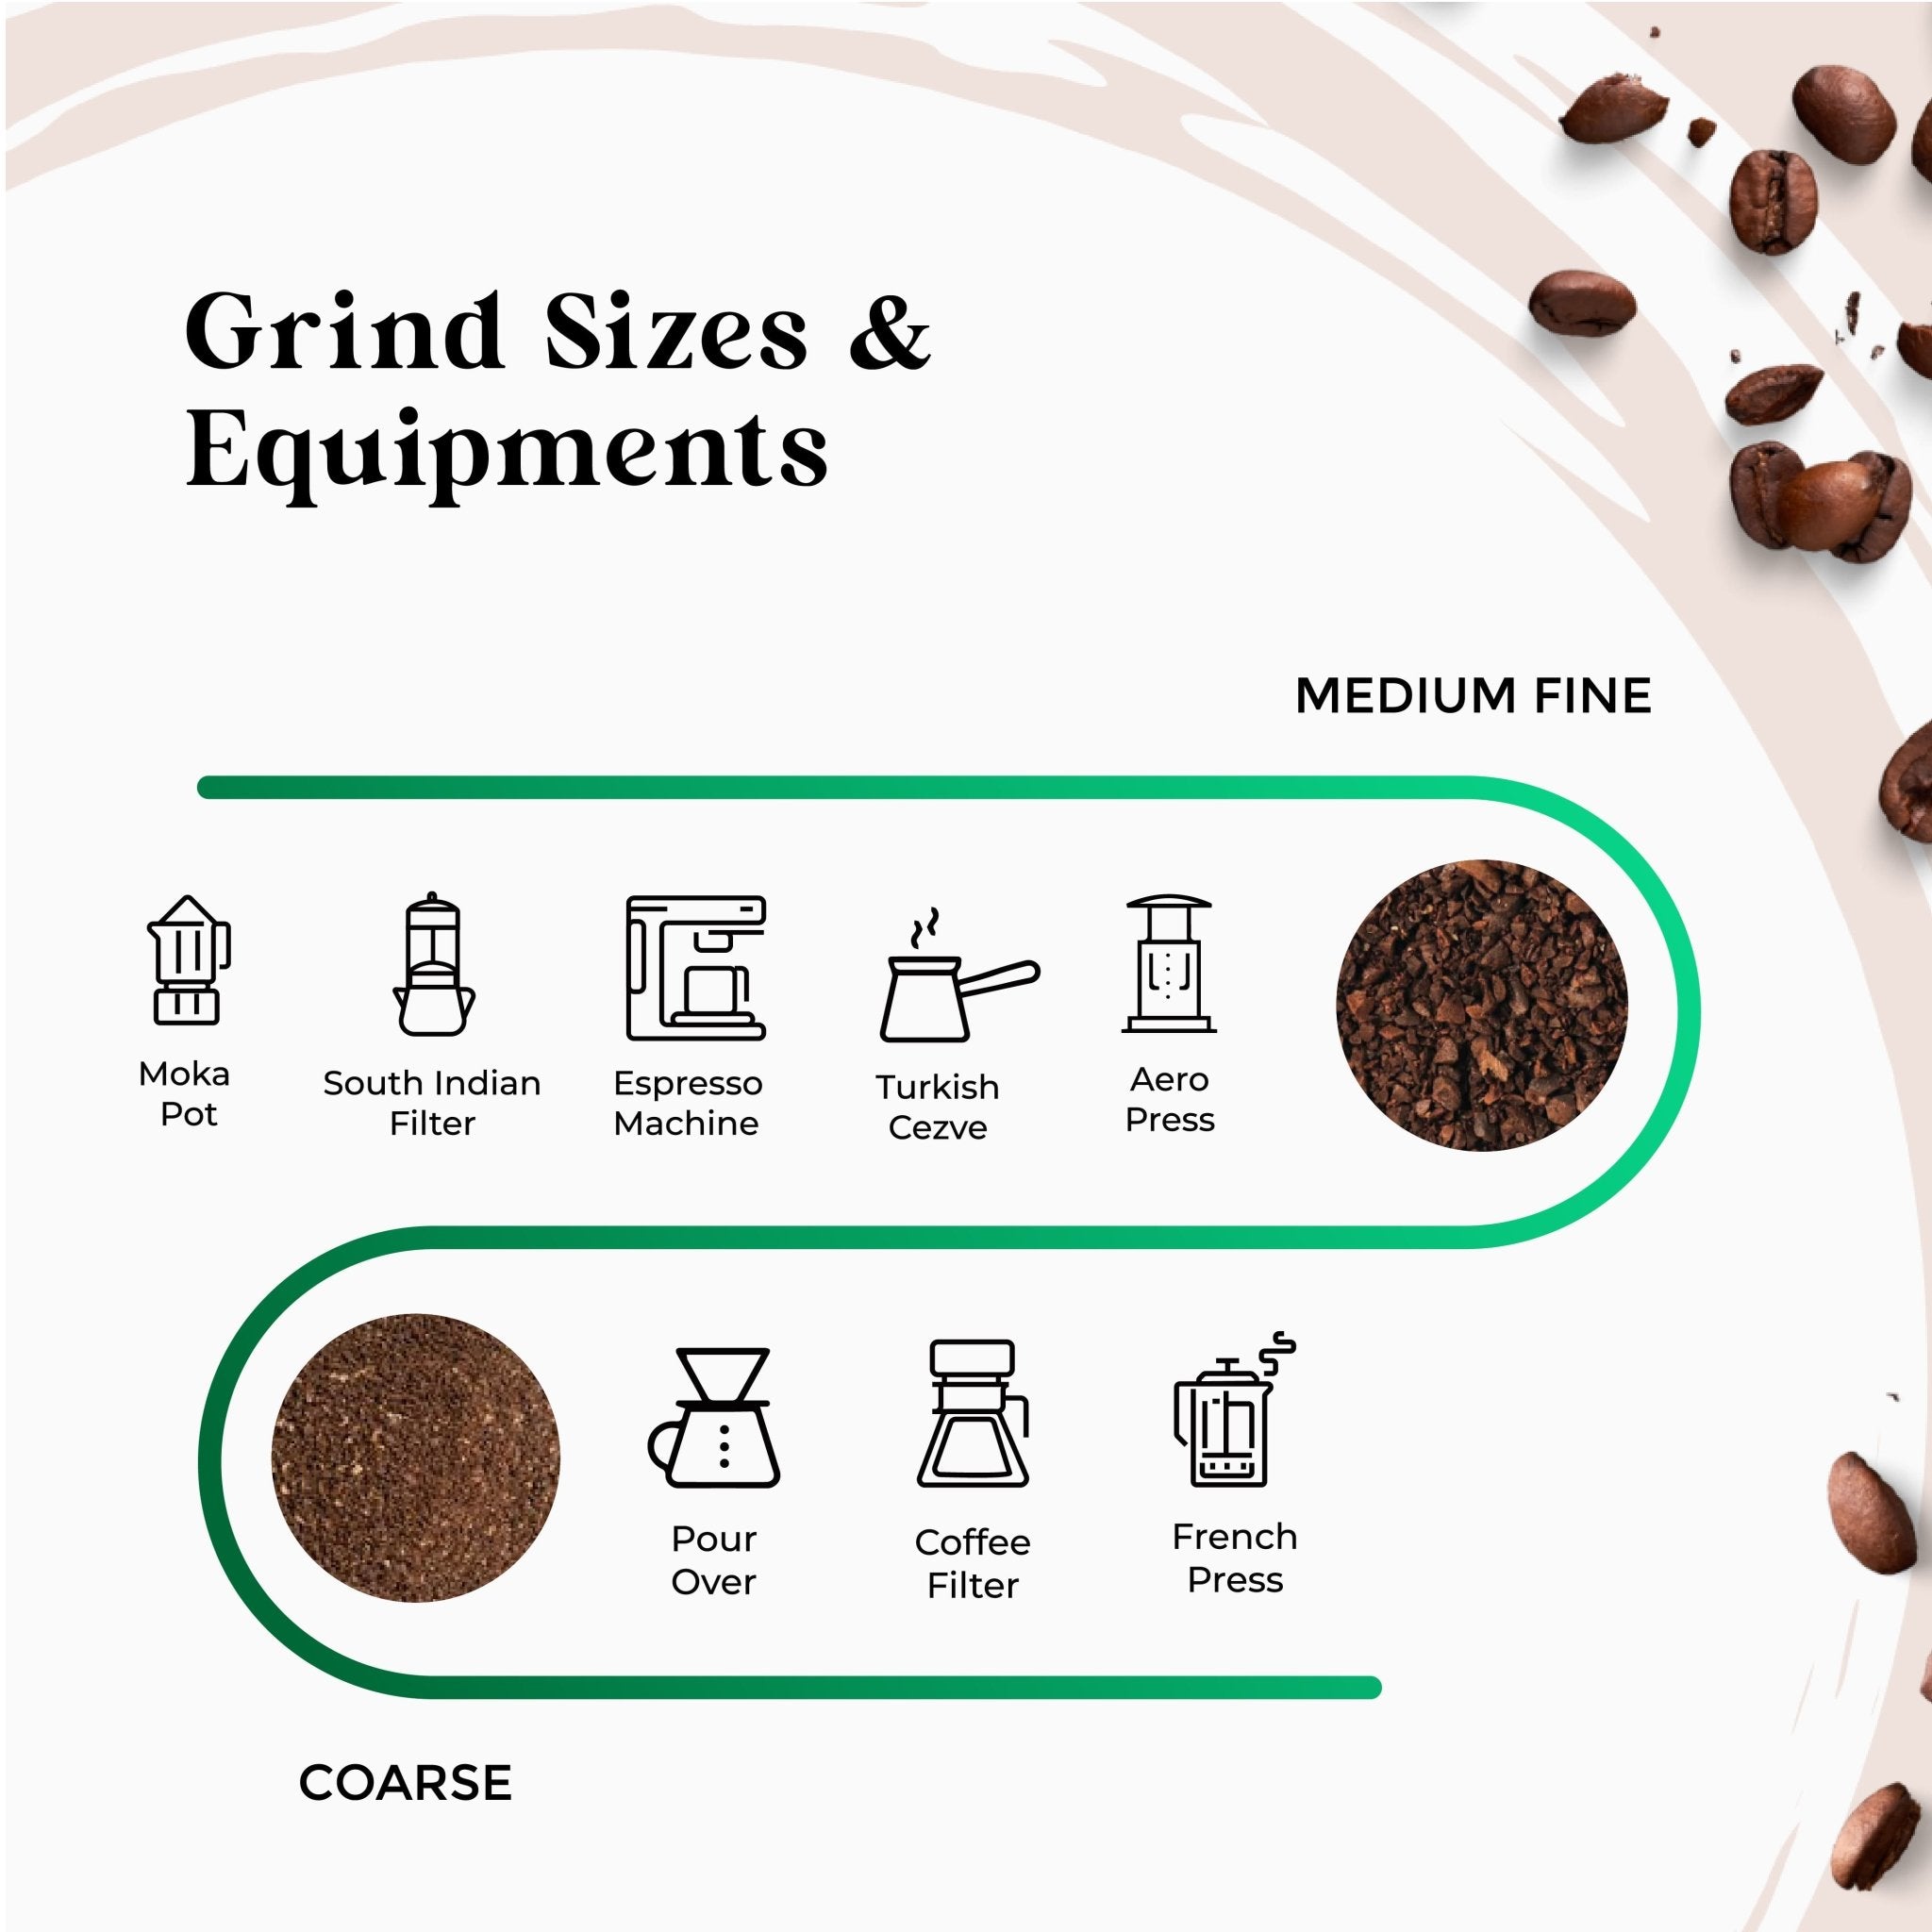 Ground Coffee - Rage Coffee